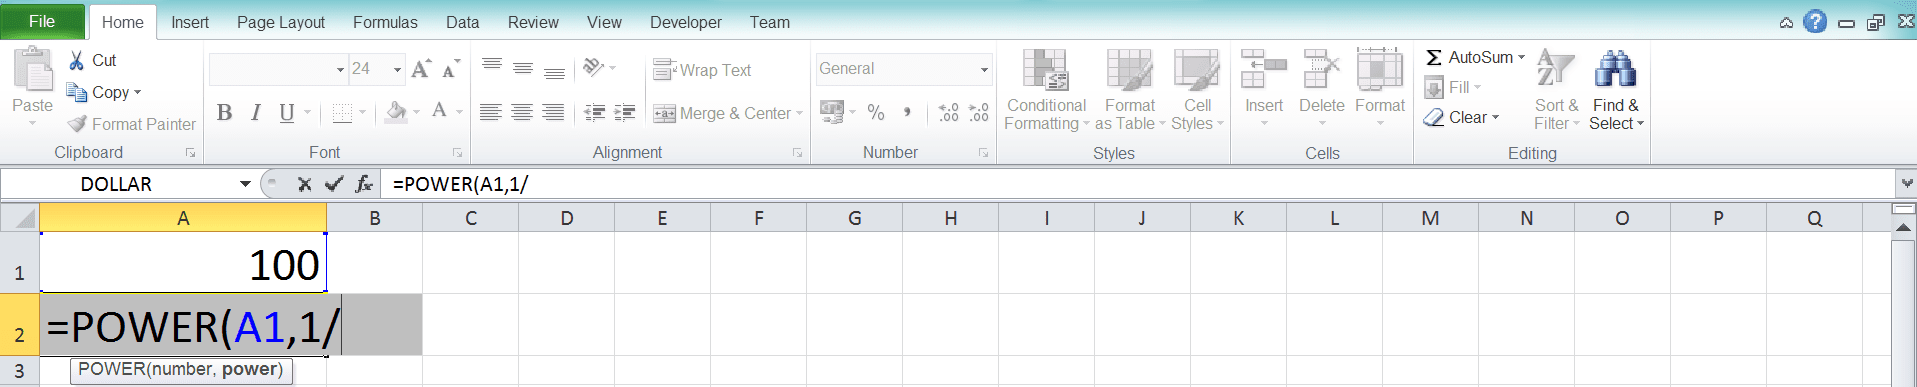 Cara Menghitung Akar di Excel Beserta Berbagai Rumus dan Fungsinya - Screenshot Langkah 2-4